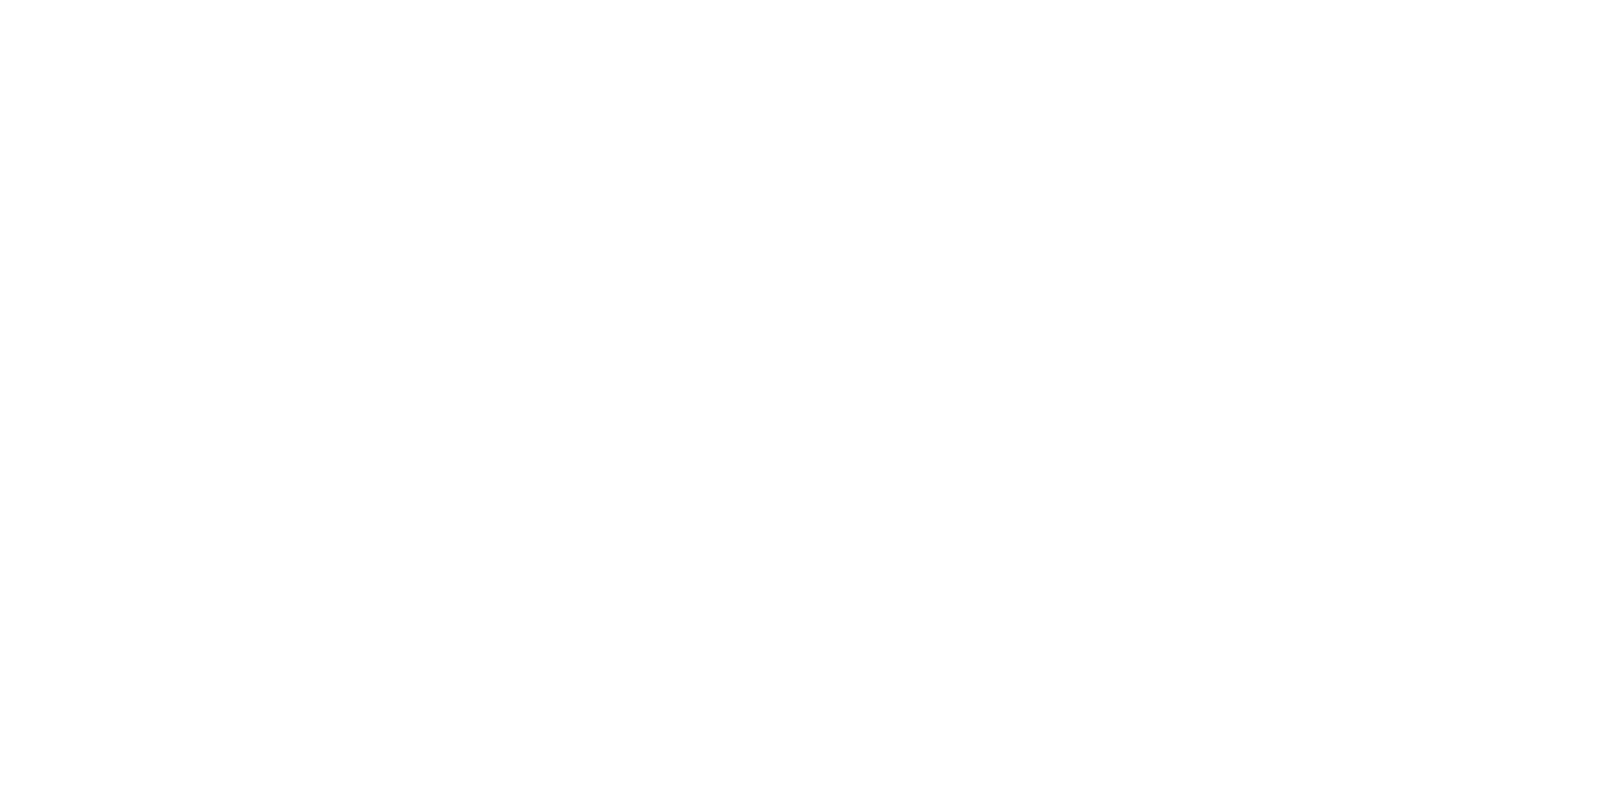 Elanco logo large for dark backgrounds (transparent PNG)